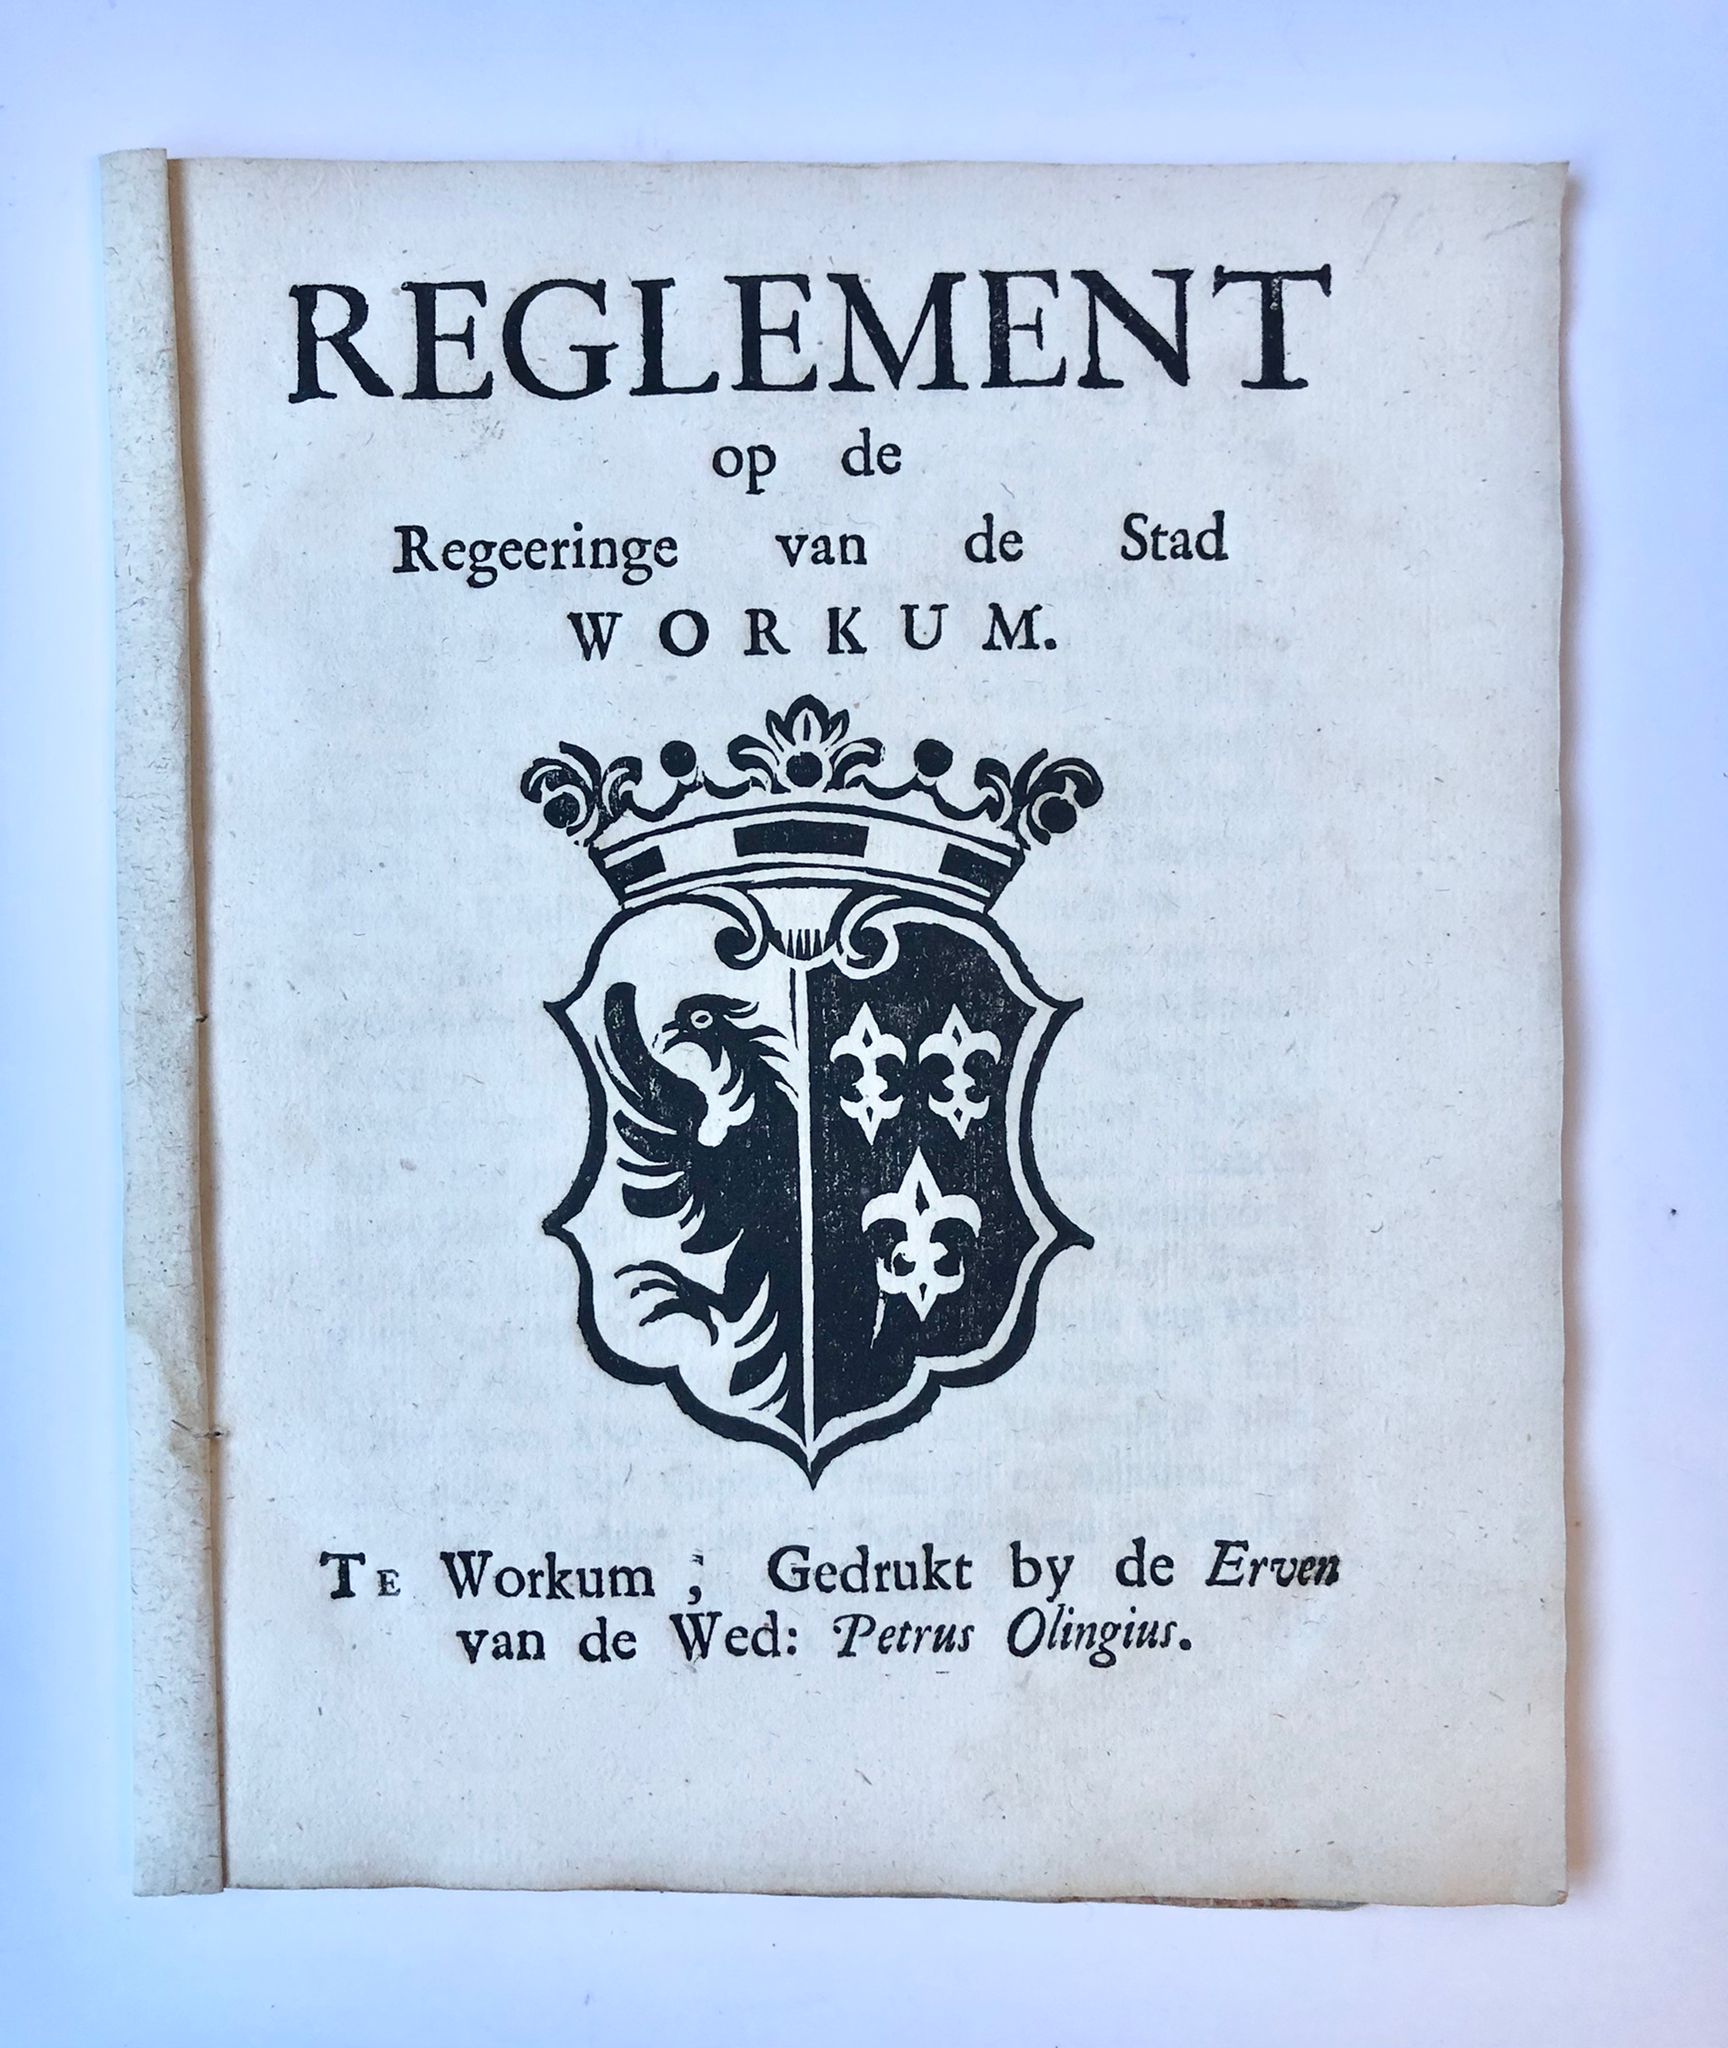 [Workum, [1772]] Reglement op de Regeeringe van de Stad Workum, gedrukt by de Erven van de Wed: Petrus Olingius, Te Workum, [1772], 15 pp.